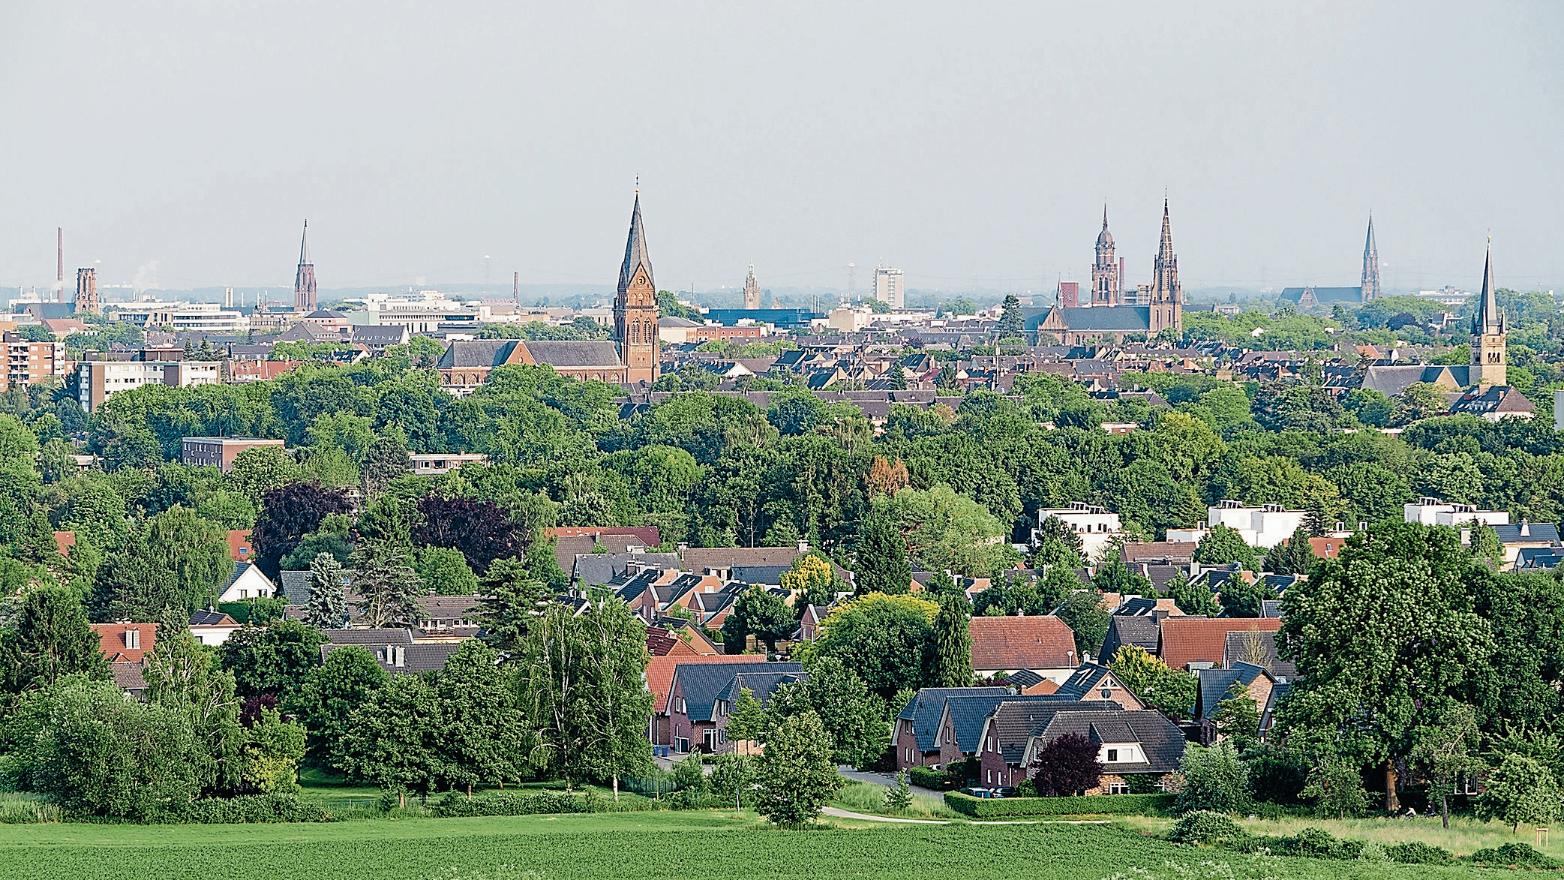 Blick auf die Krefelder Innenstadt. Zukünftig soll die Region einen Pastoralen Raum umfassen. (c) wikipedia